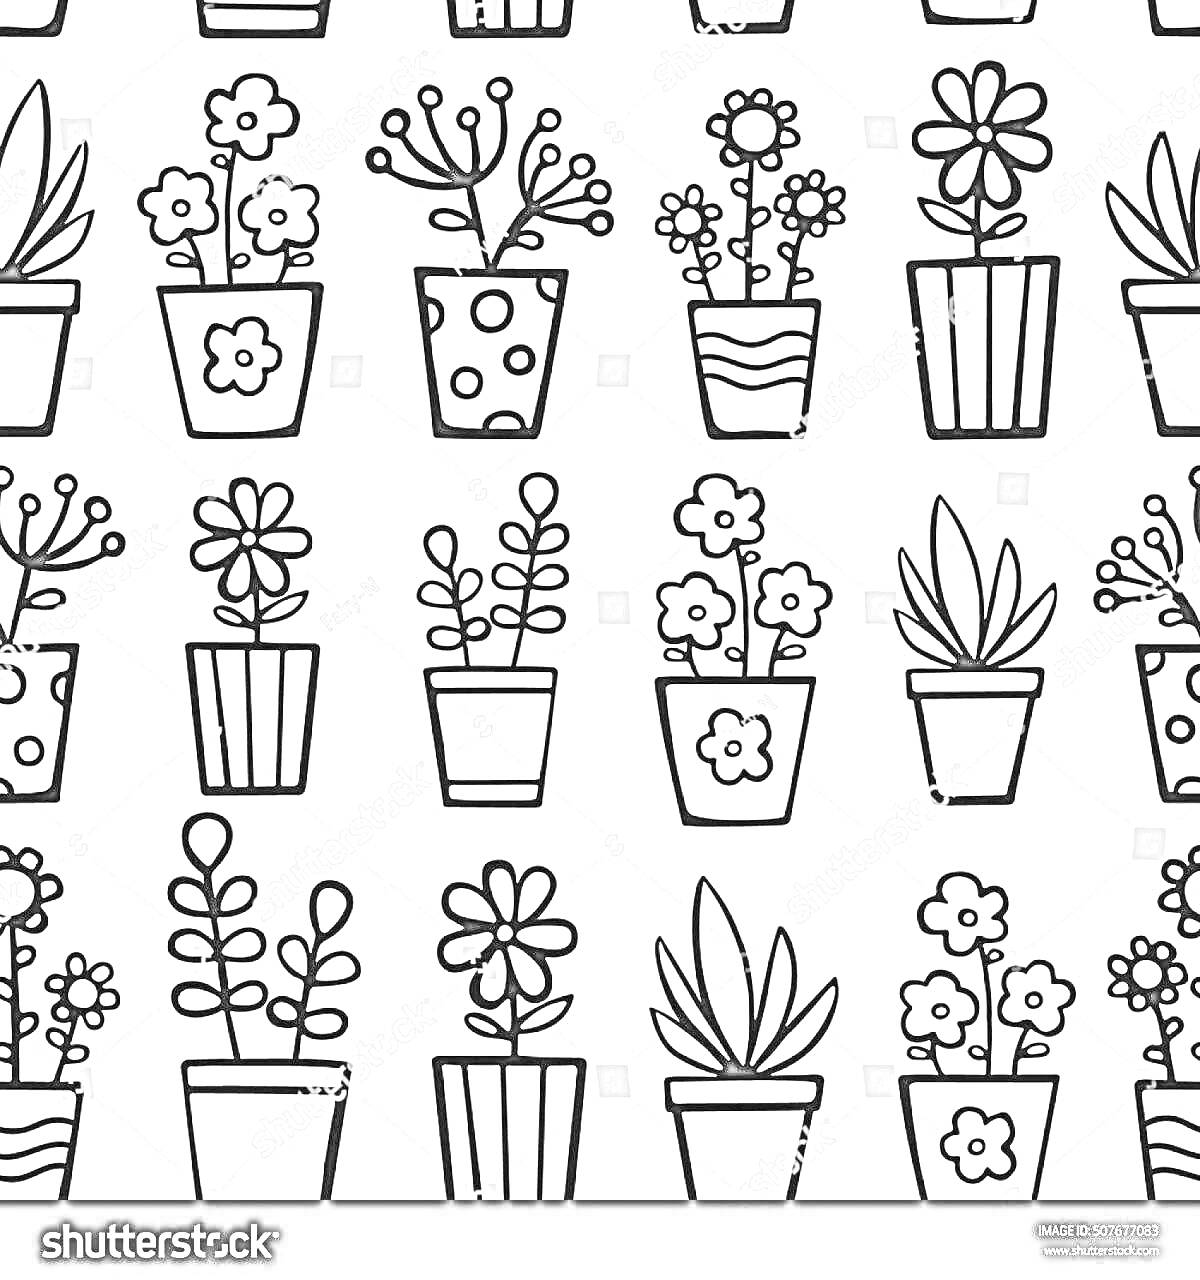 Раскраска Вазы с комнатными растениями и цветами, различные рисунки горшков и веток